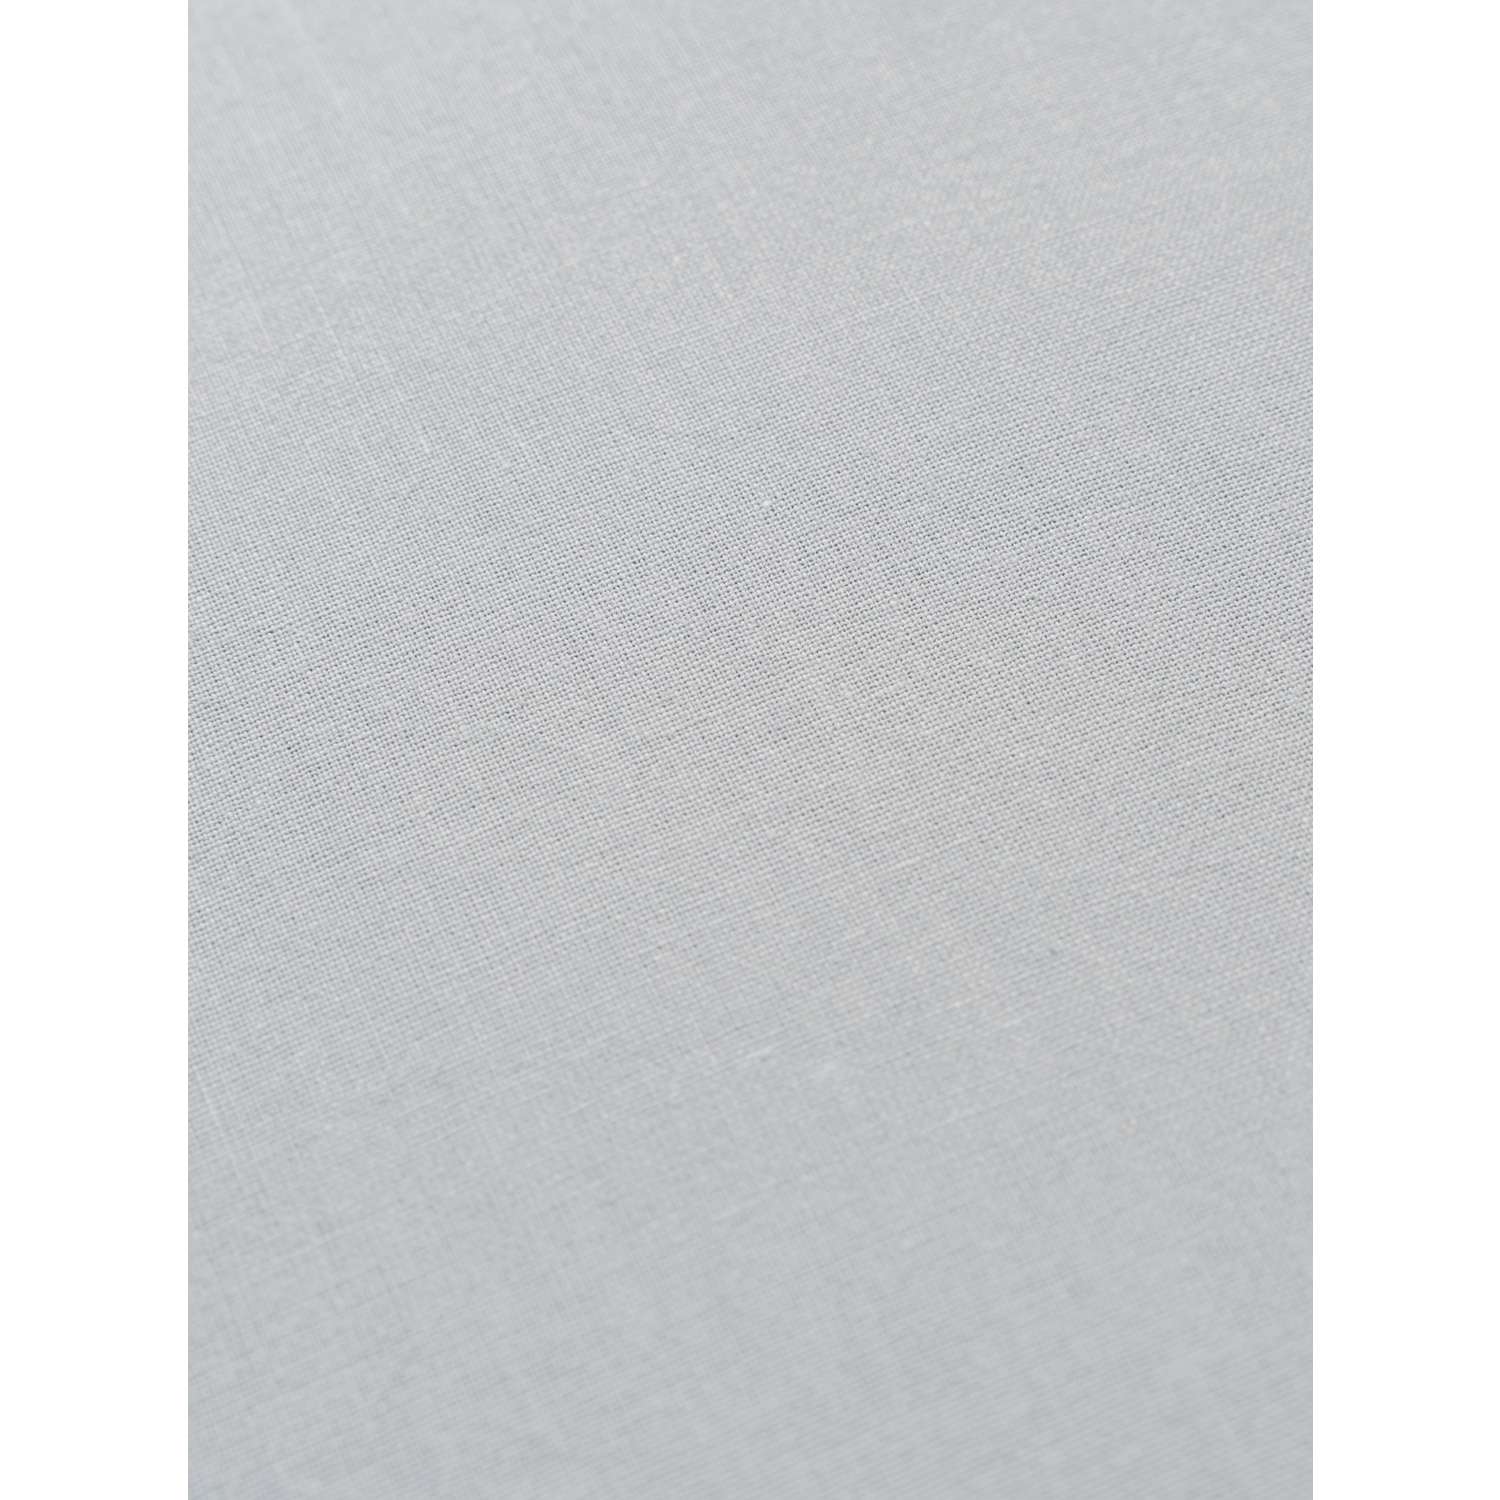 Комплект постельного белья IDEASON поплин 3 предмета 1.5 сп. серый - фото 5